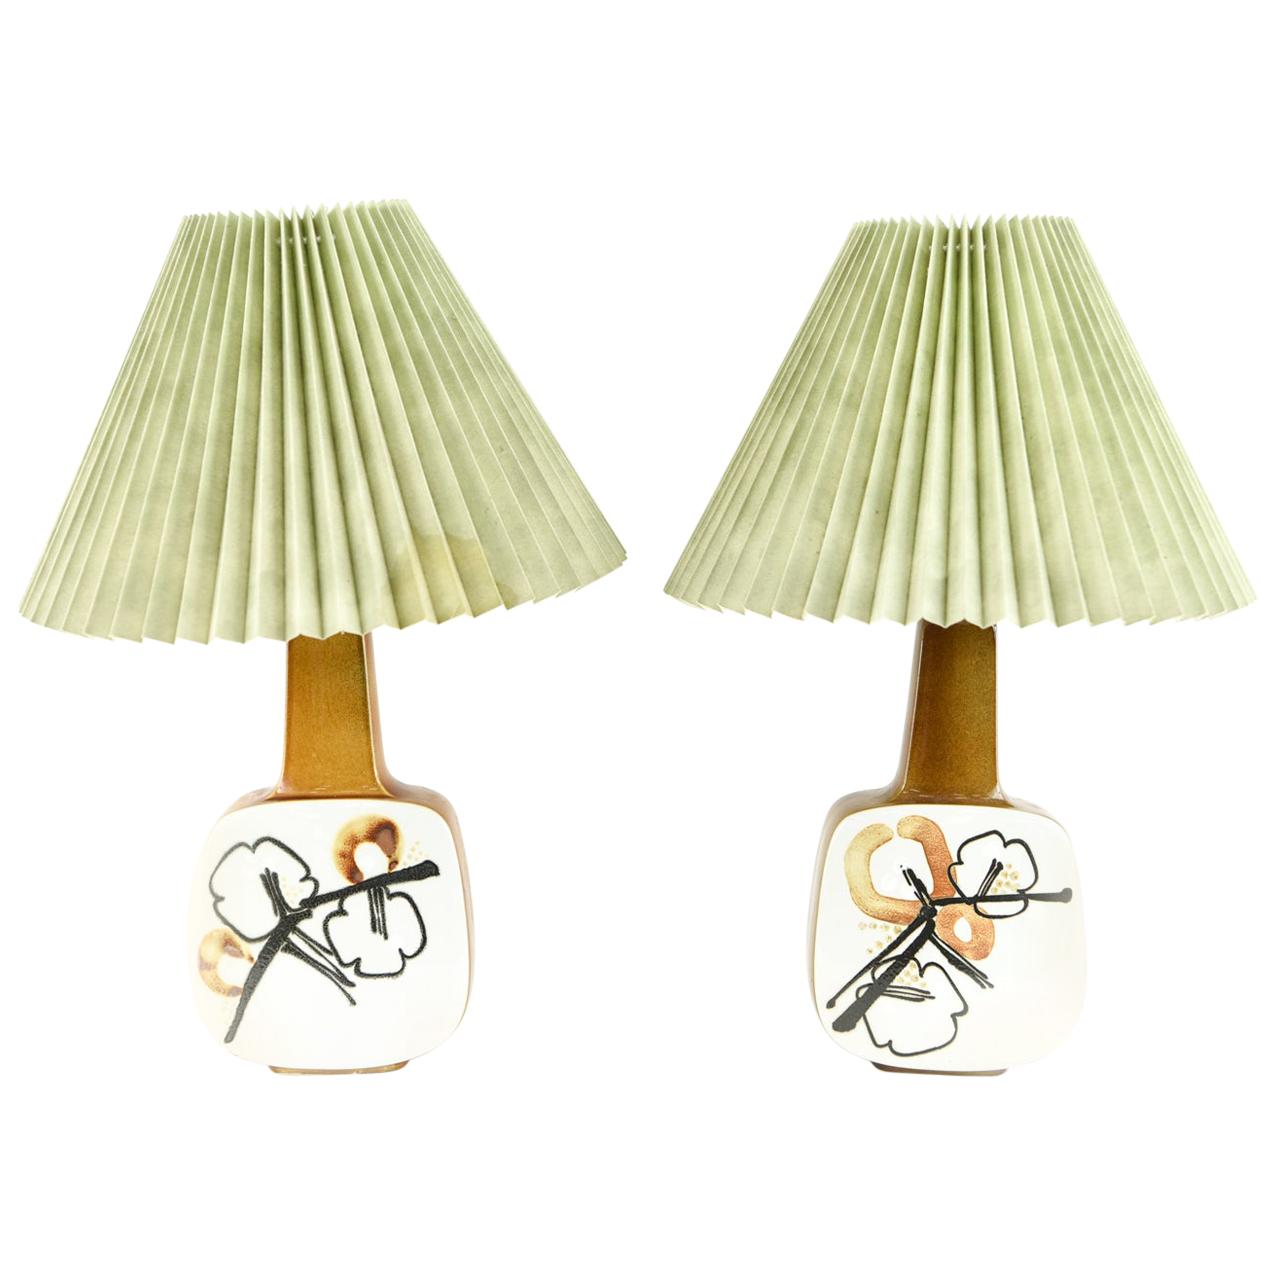 '2' Royal Copenhagen Aluminia Table Lamps